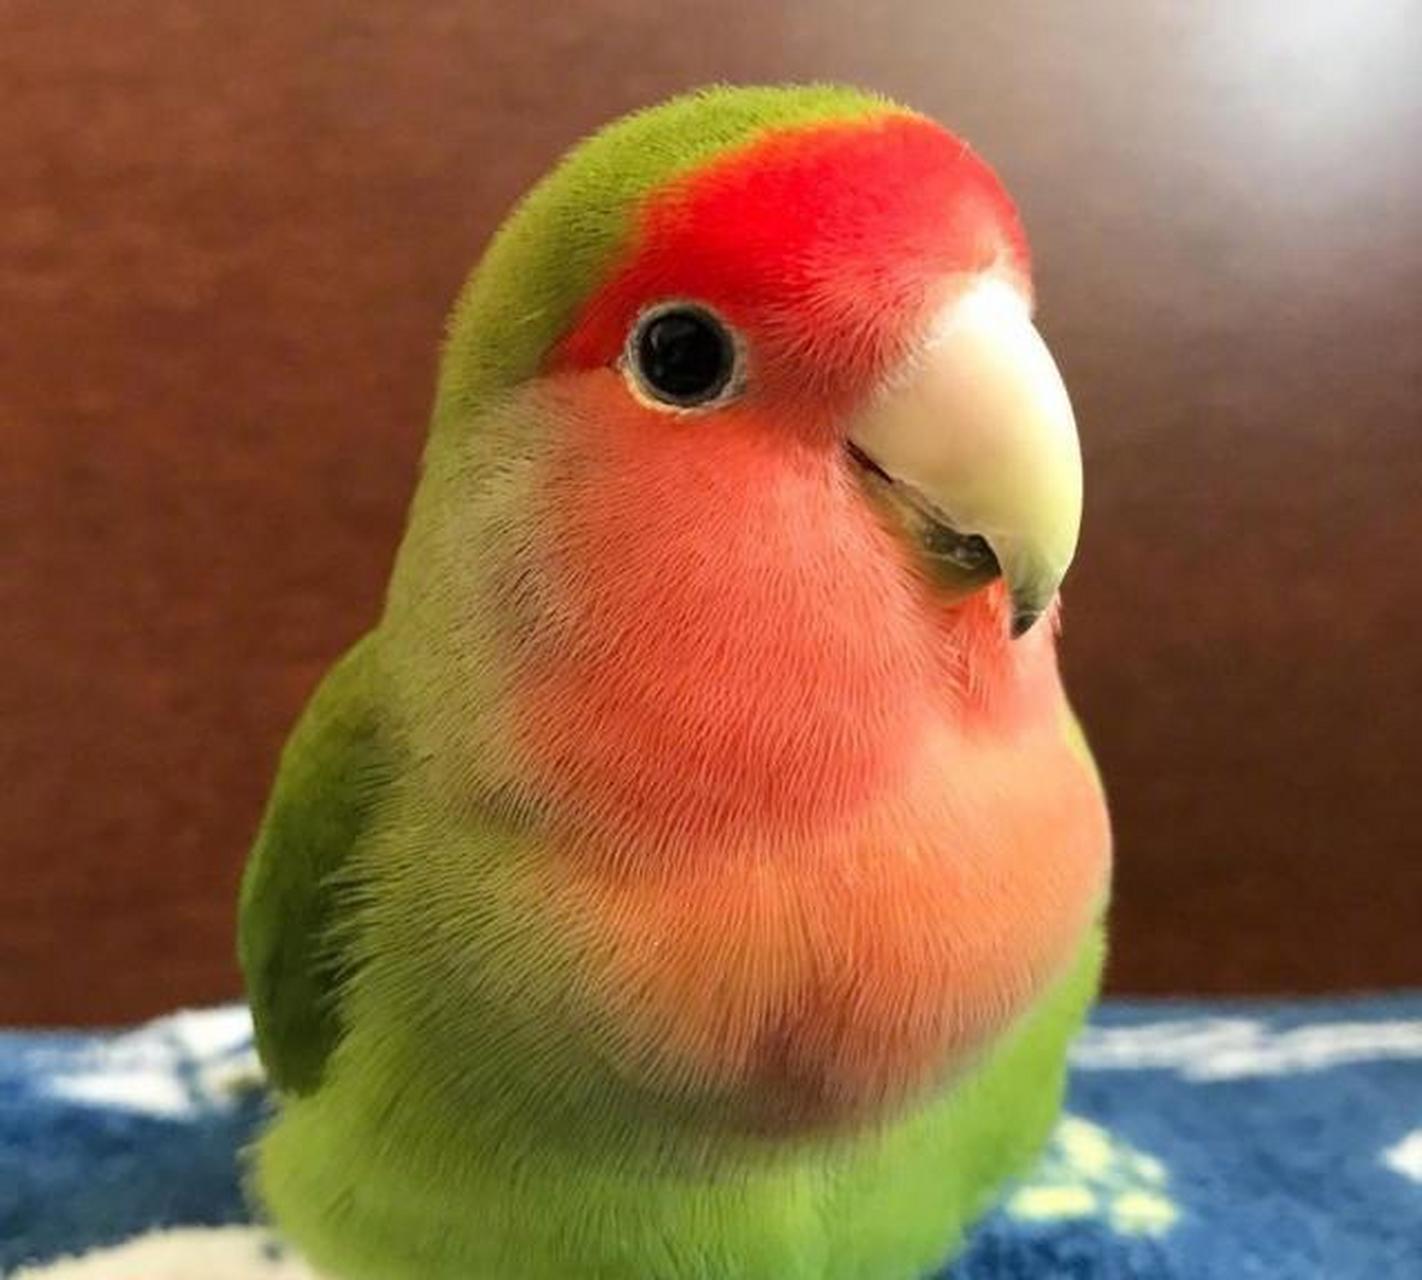 这只日本的西瓜味的小鹦鹉名字叫すーさん,是一只桃面爱情鸟,有黄绿色